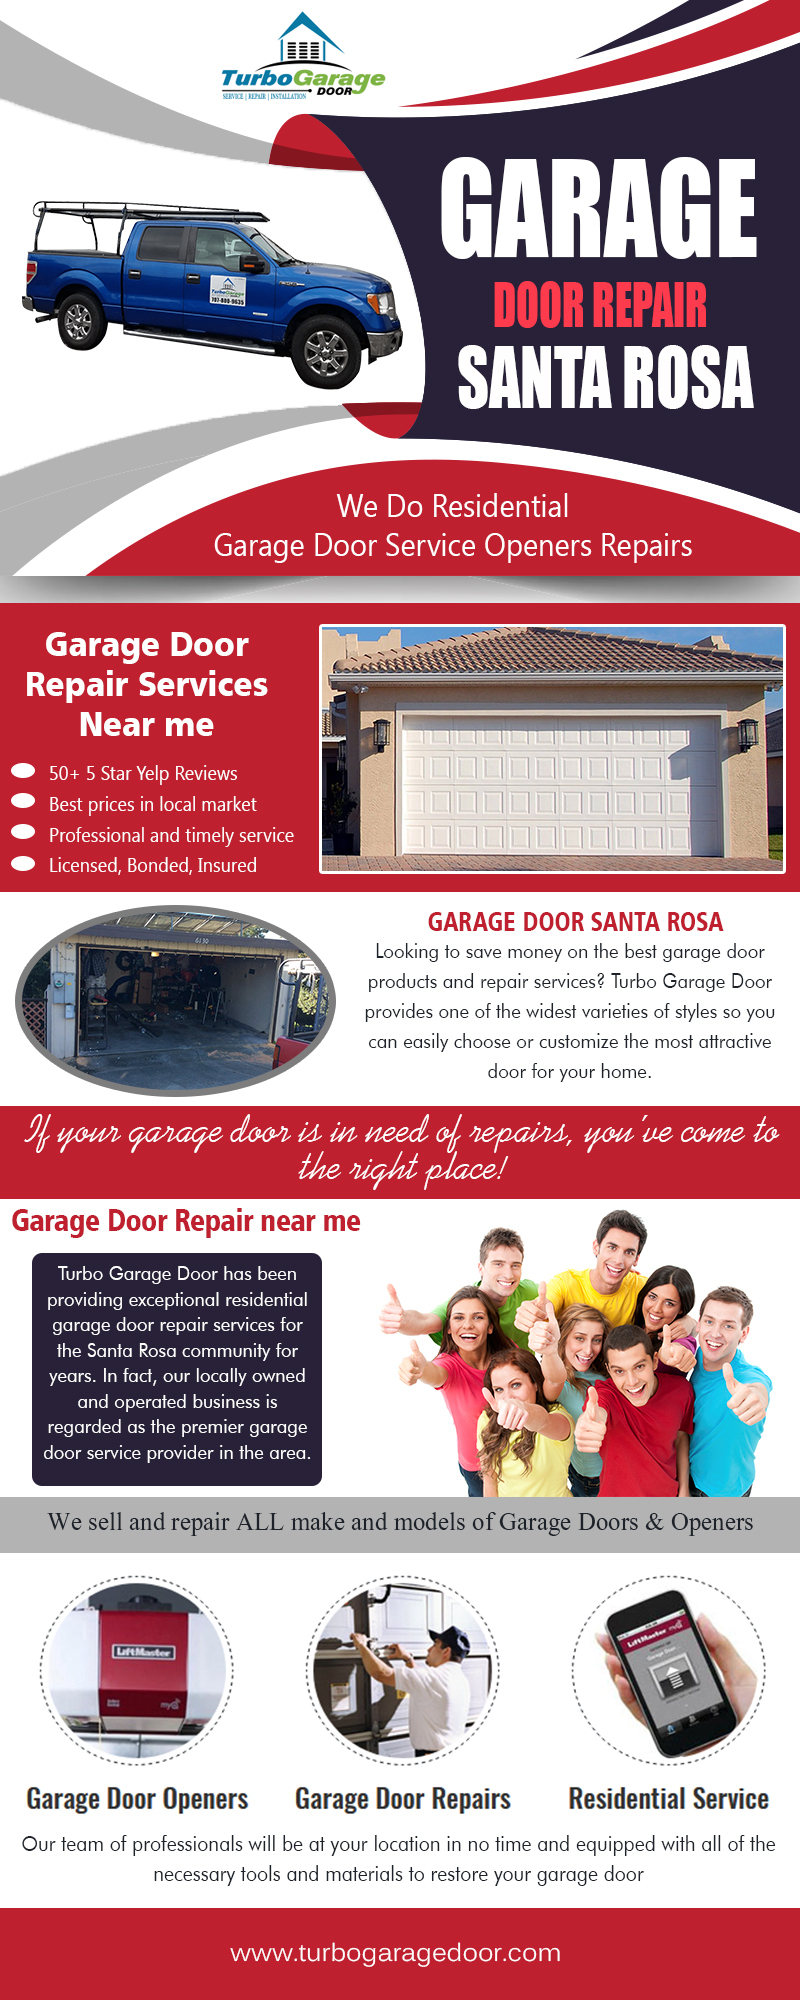 Garage Door Repair Santa Rosa